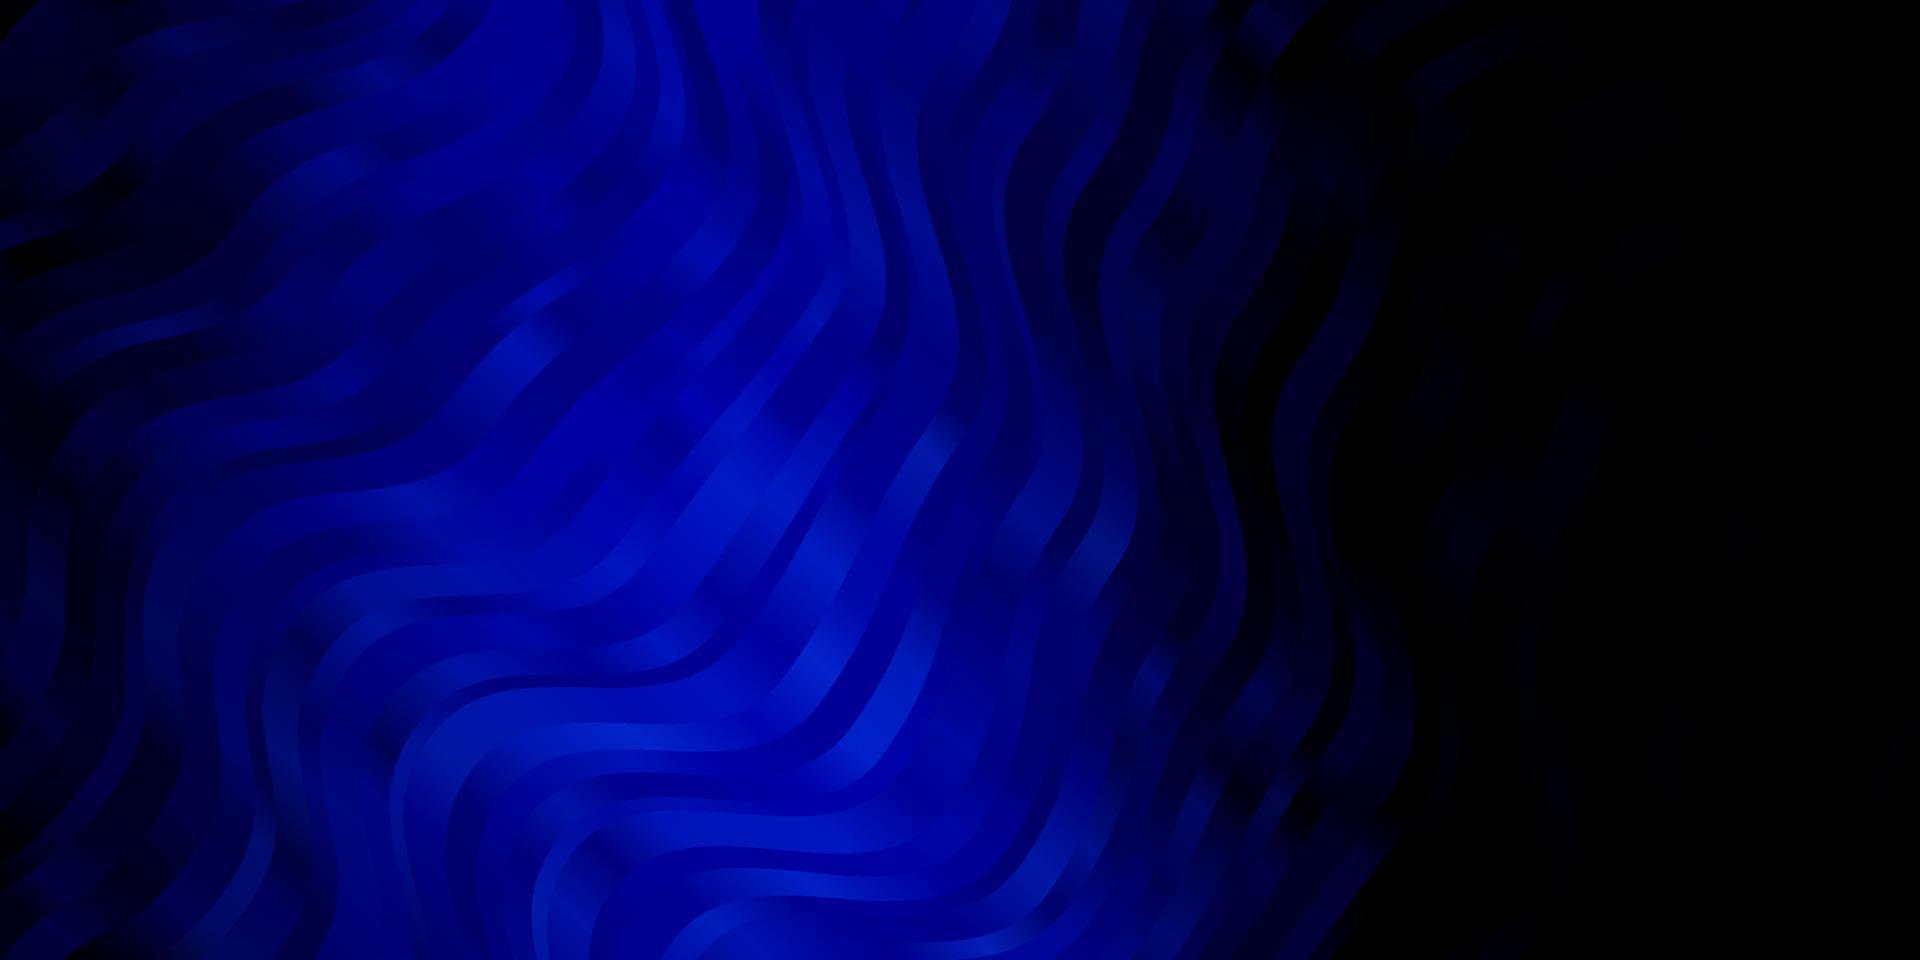 plantilla de vector azul oscuro con curvas.